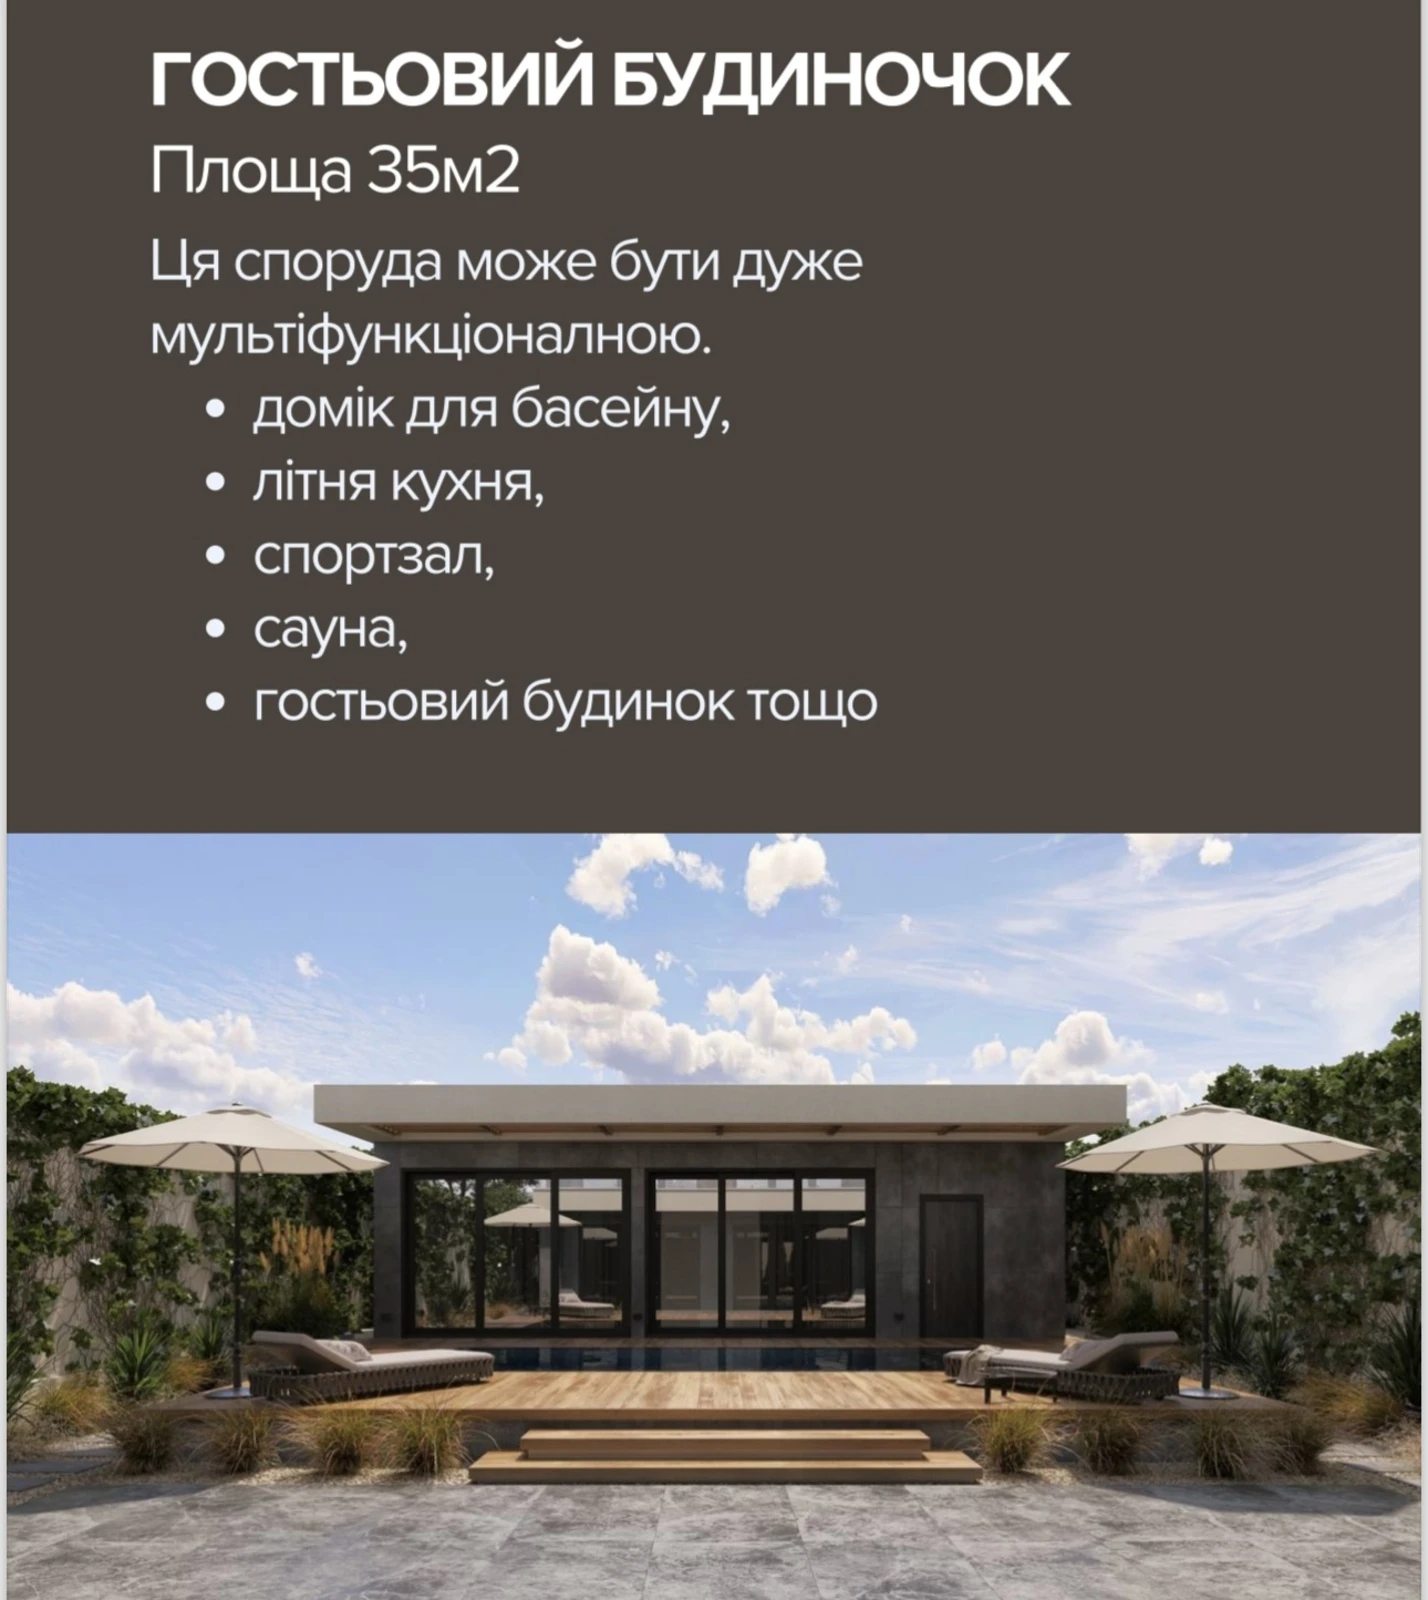 House for sale. 230 m², 2 floors. Morskyy prospekt, Odesa. 